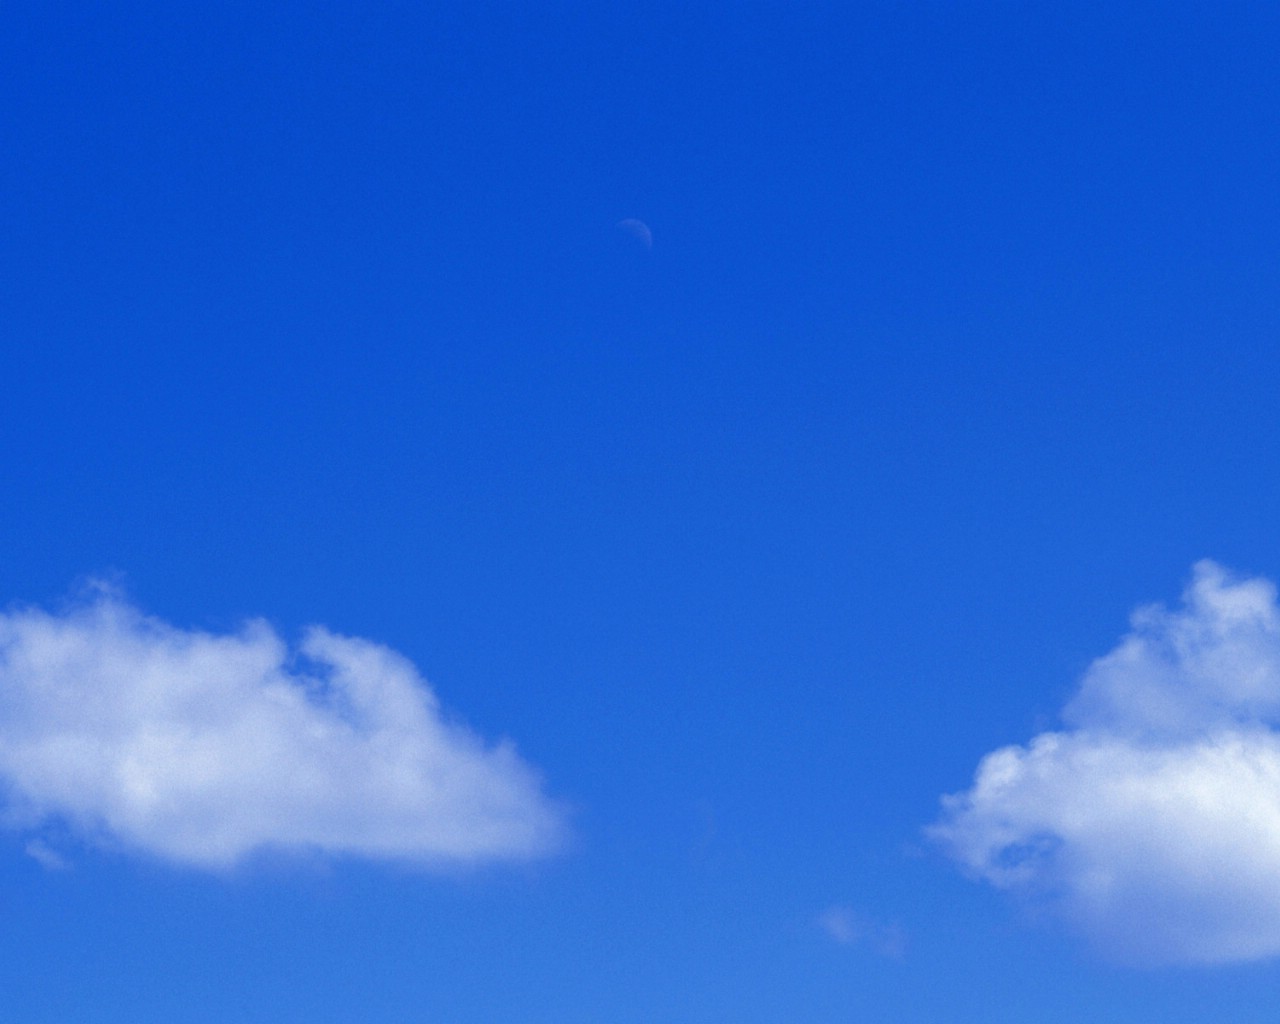 壁纸1280x1024 天空白云图片 天空云彩壁纸 蔚蓝天空-蓝天白云壁纸壁纸 蔚蓝天空-蓝天白云壁纸图片 蔚蓝天空-蓝天白云壁纸素材 风景壁纸 风景图库 风景图片素材桌面壁纸